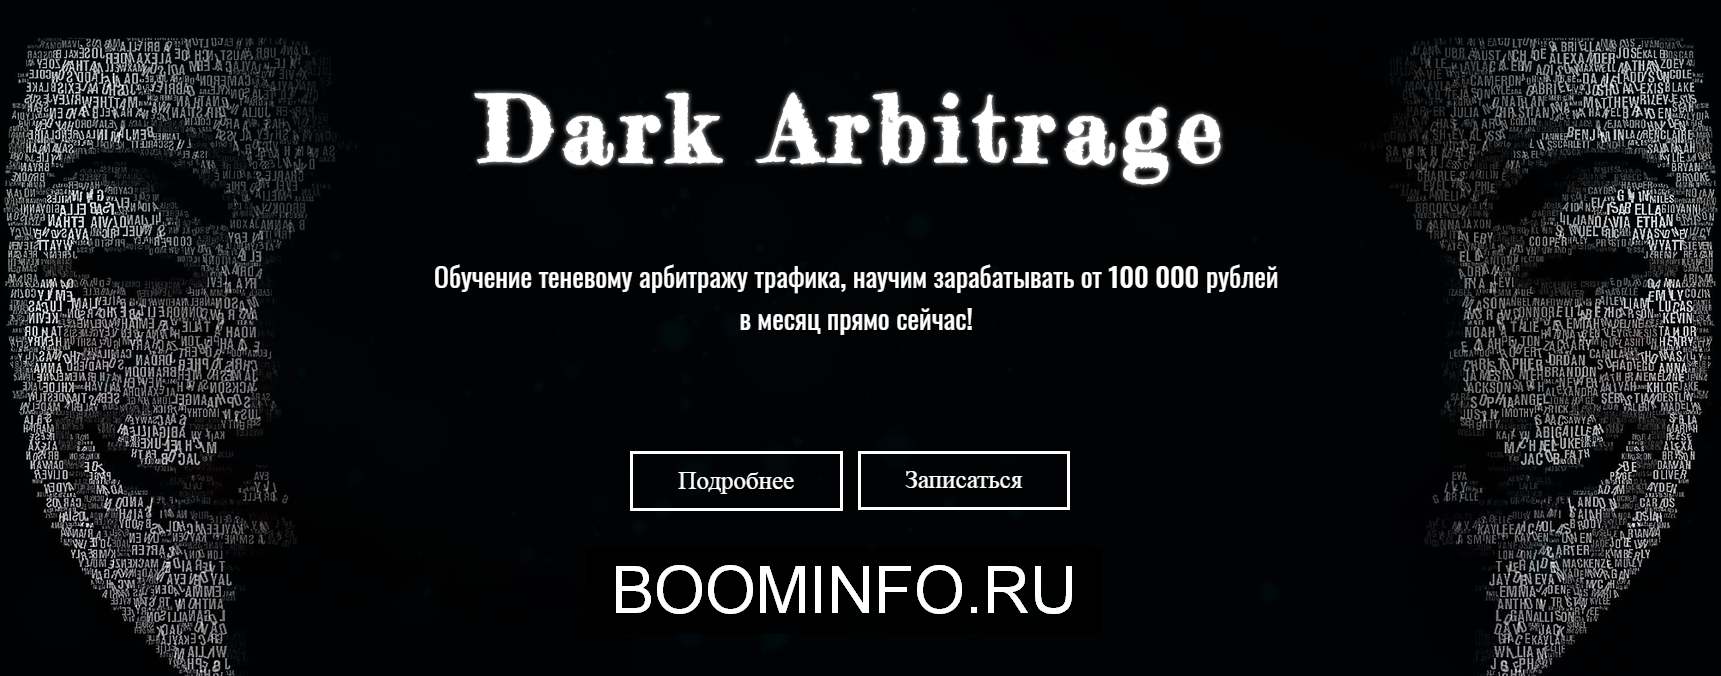 dark-arbitrage-obuchenie-tenevomu-arbitrazhu-trafika-ot-100-000-rublej-v-mesjac-2019-png.734